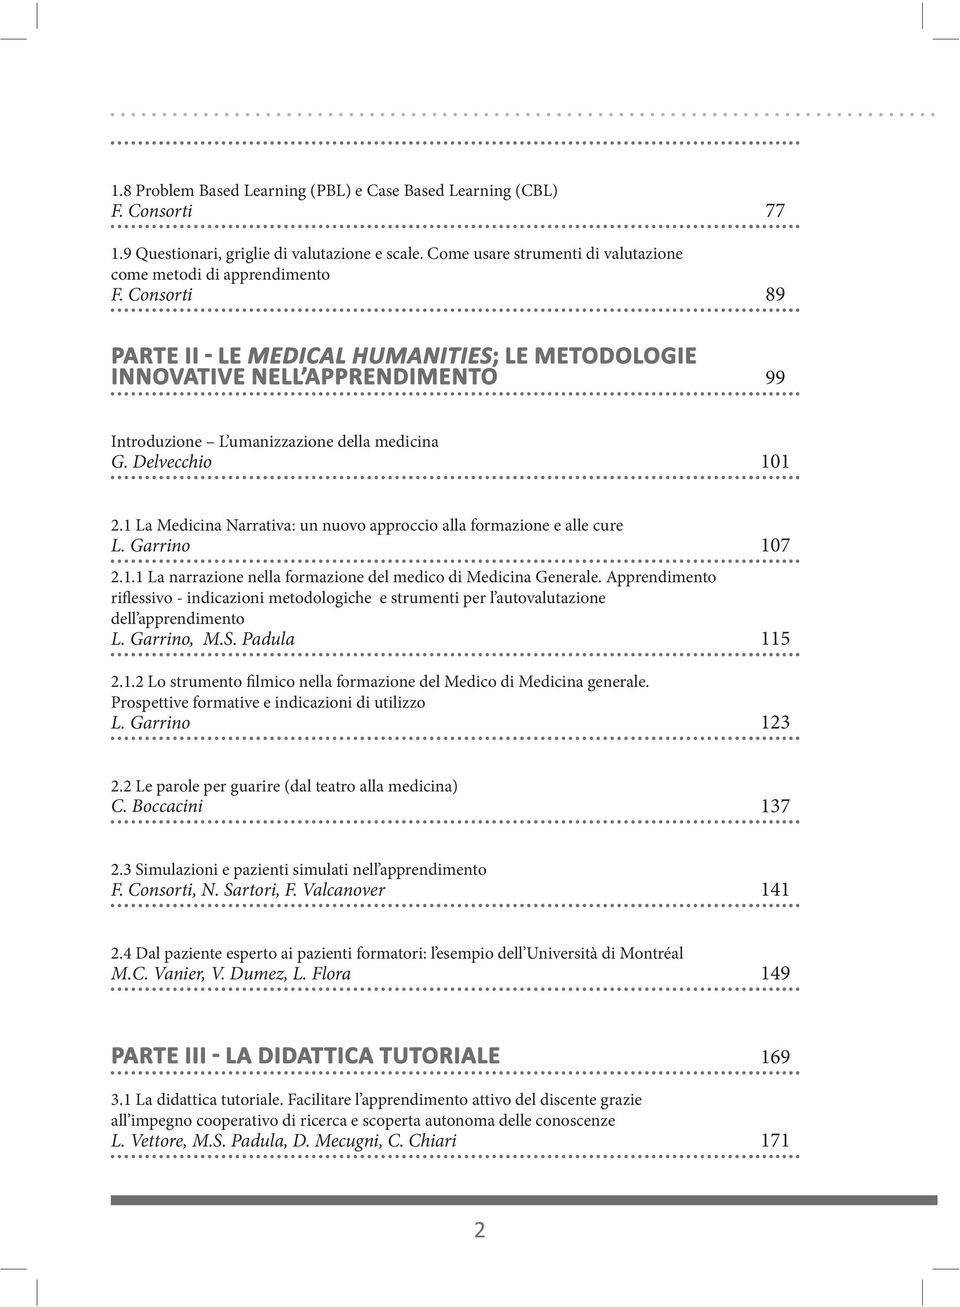 Apprendimento riflessivo - indicazioni metodologiche e strumenti per l autovalutazione dell apprendimento L. Garrino, M.S. Padula 11